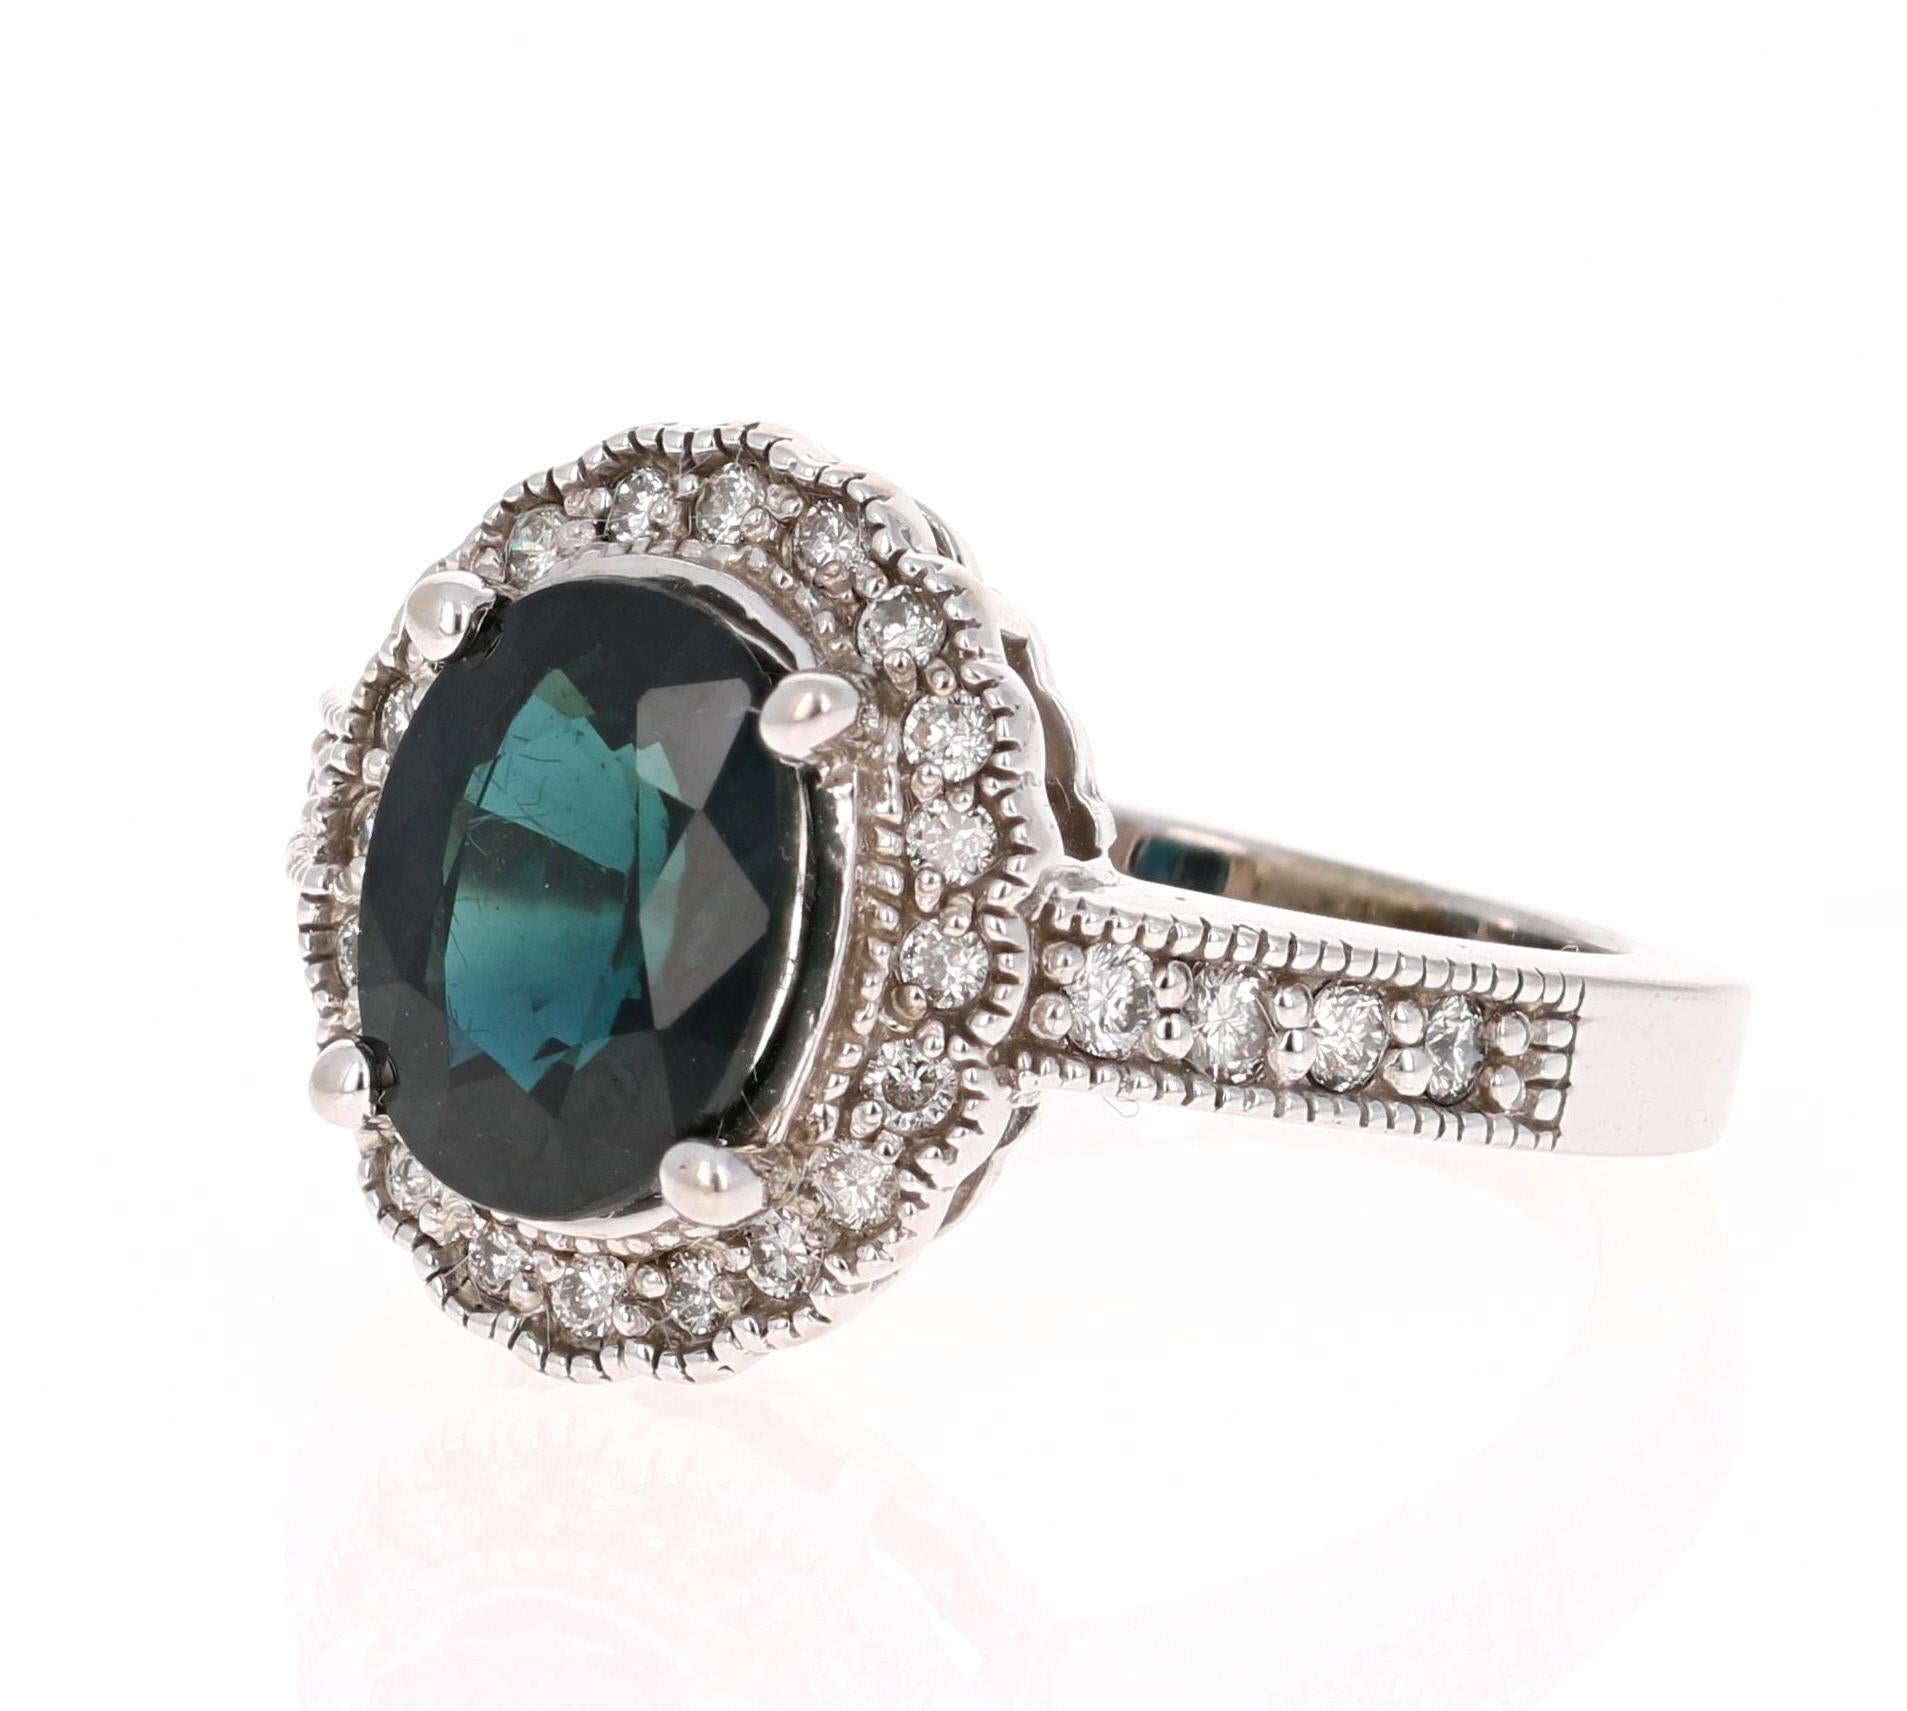 Wunderschöner Ring mit 3,05 Karat Vintage Saphir und Diamant, der auch als einzigartiger Verlobungsring getragen werden kann!  

Der tiefblaue Saphir im Ovalschliff wiegt 2,67 Karat und ist von 28 Diamanten im Rundschliff umgeben, die 0,38 Karat